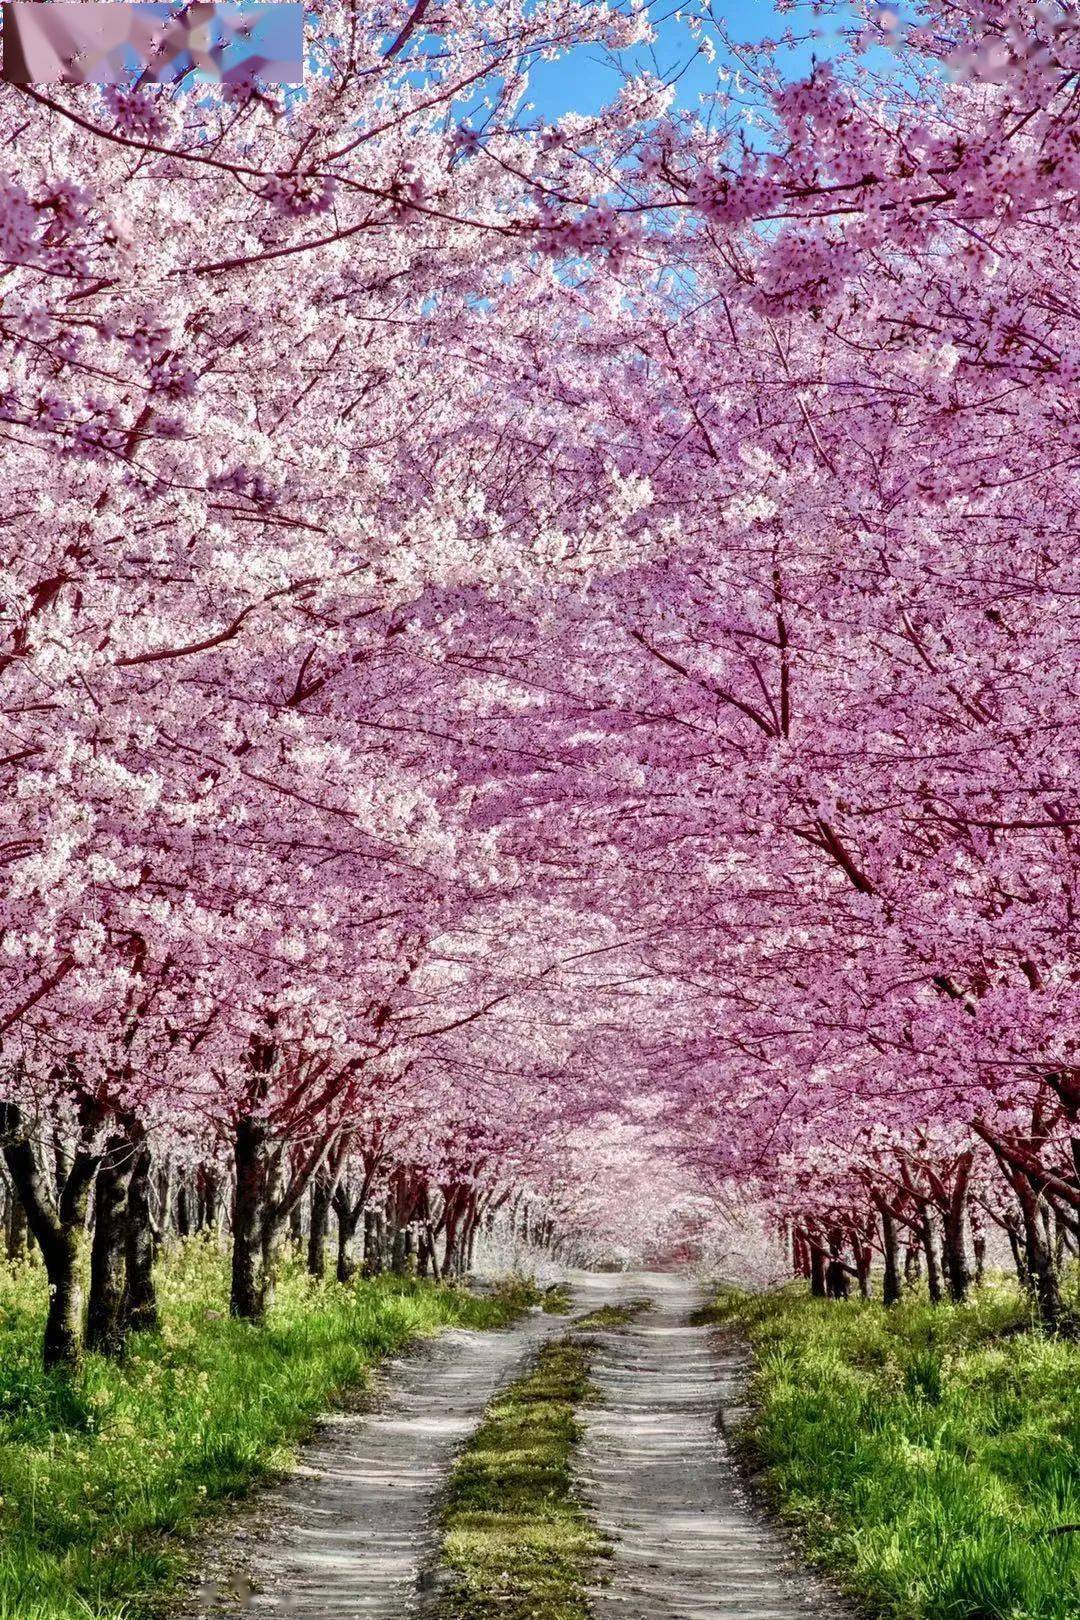 侧湖畔旁将在春风的暖抚下贵州6000亩樱花海3月春暖花开3月中下旬贵州